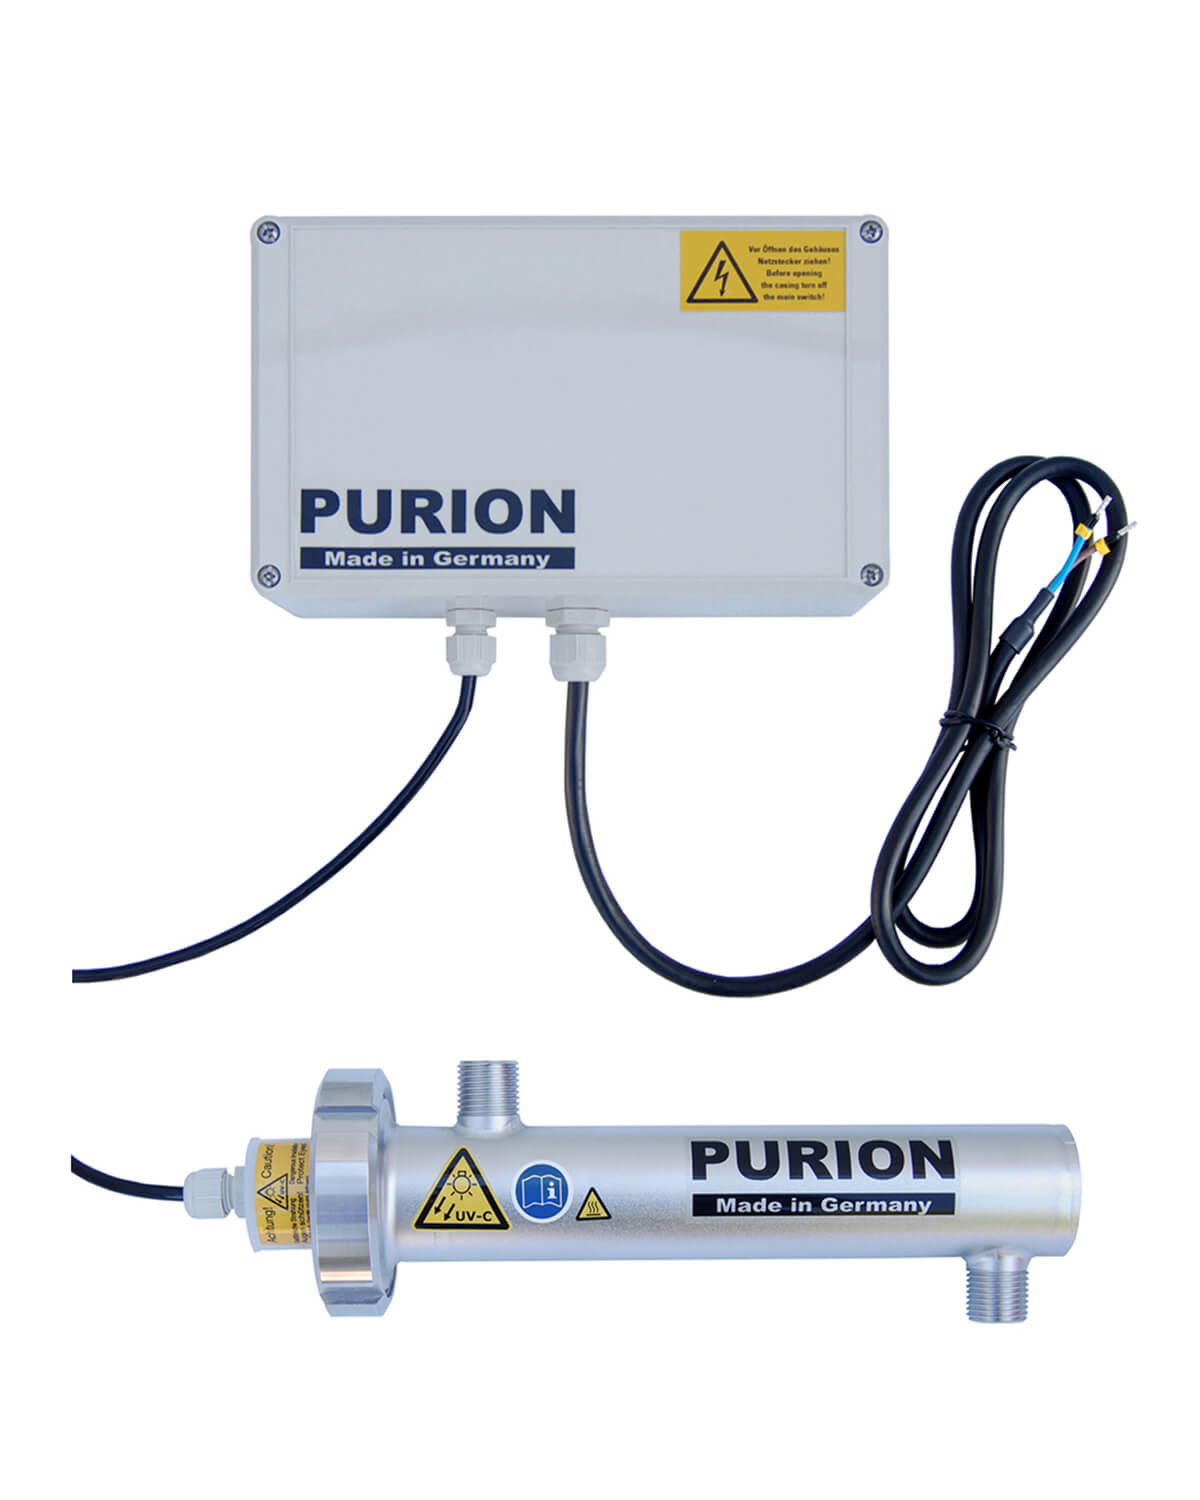 PURION 400 12 V/24 V DC Basic